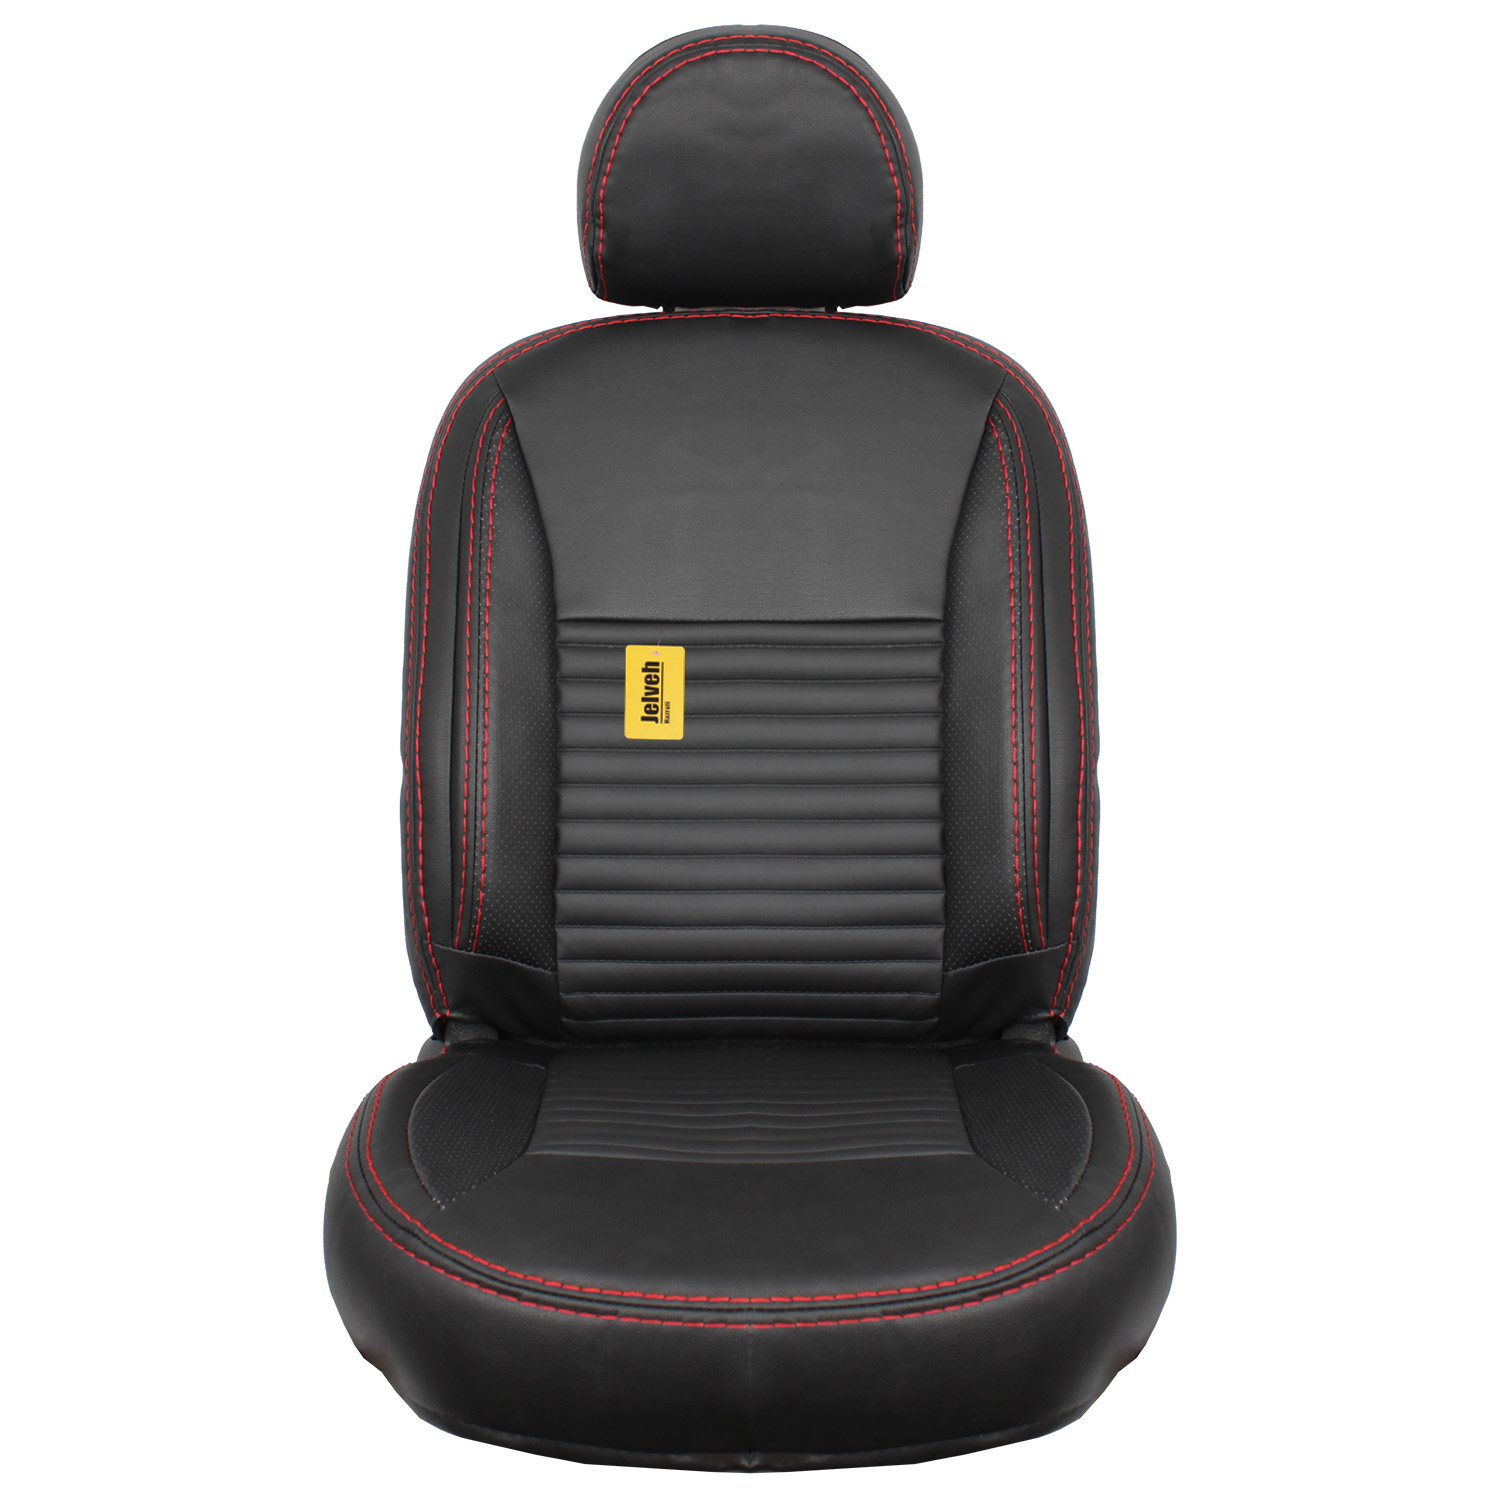 نکته خرید - قیمت روز روکش صندلی خودرو جلوه مدل VIP12 مناسب برای پژو 206 خرید